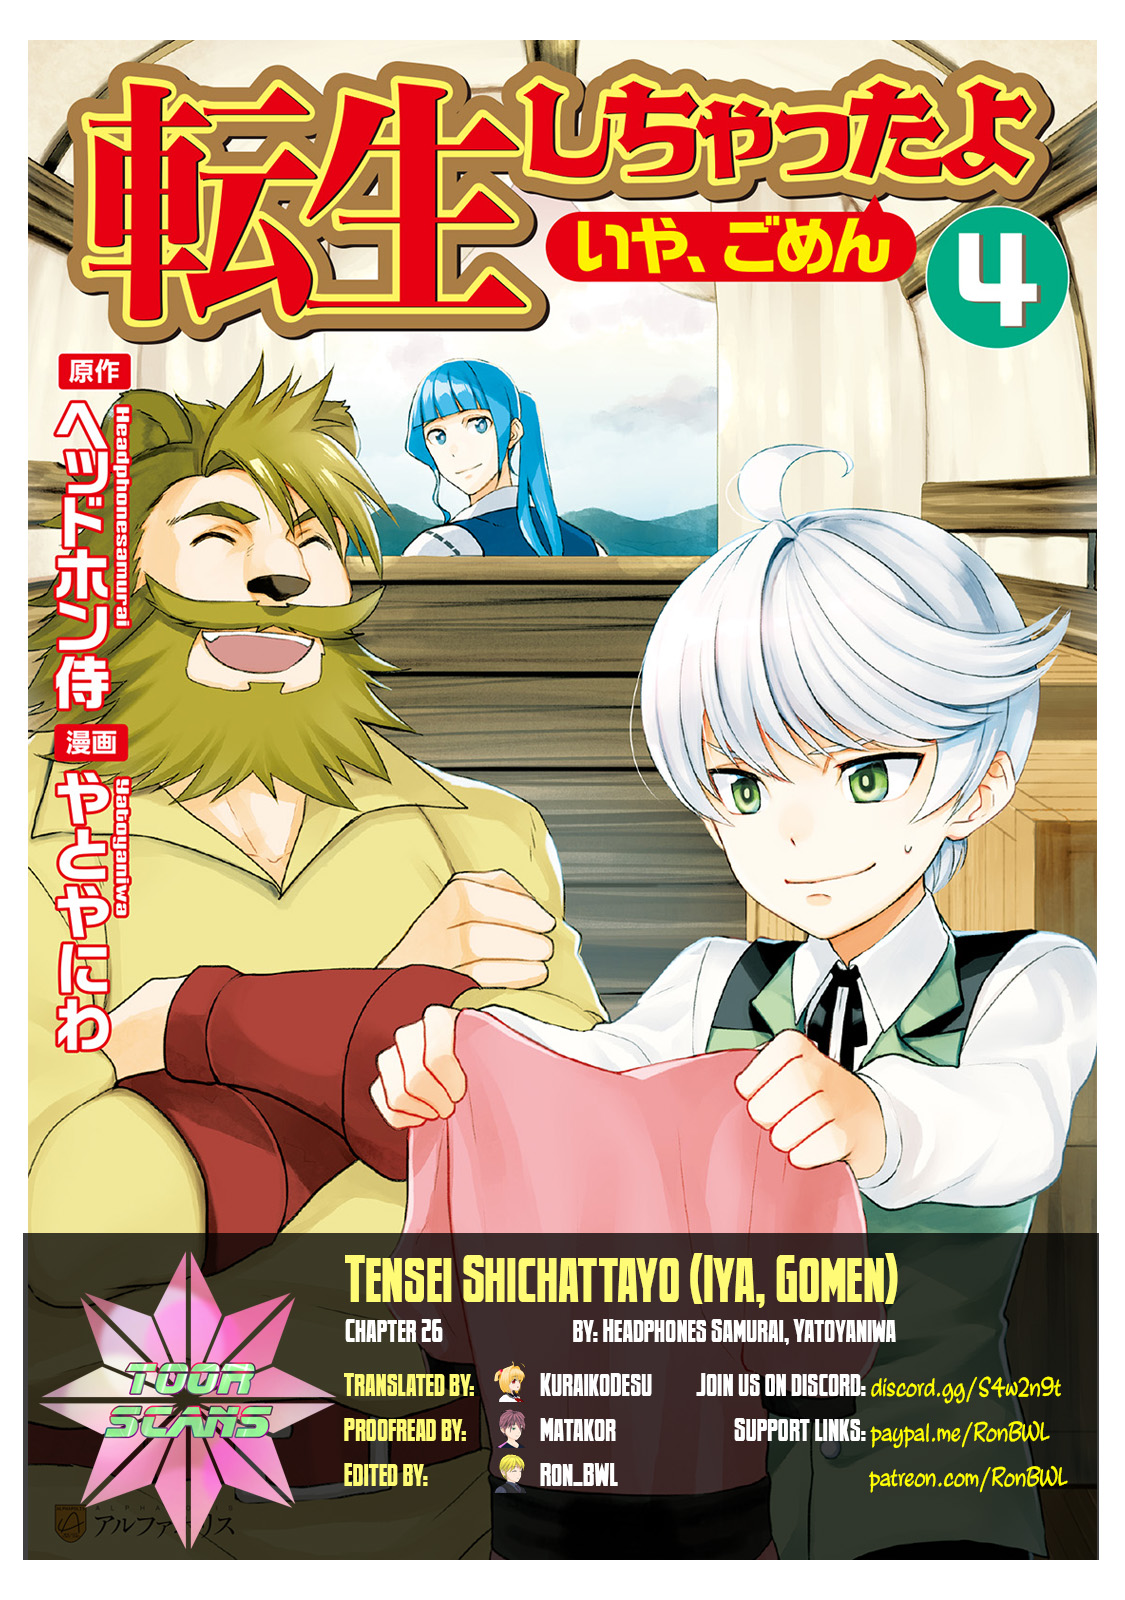 Tensei Shichattayo (Iya, Gomen) Vol. 4 Ch. 26 Hittsue Invasion!!